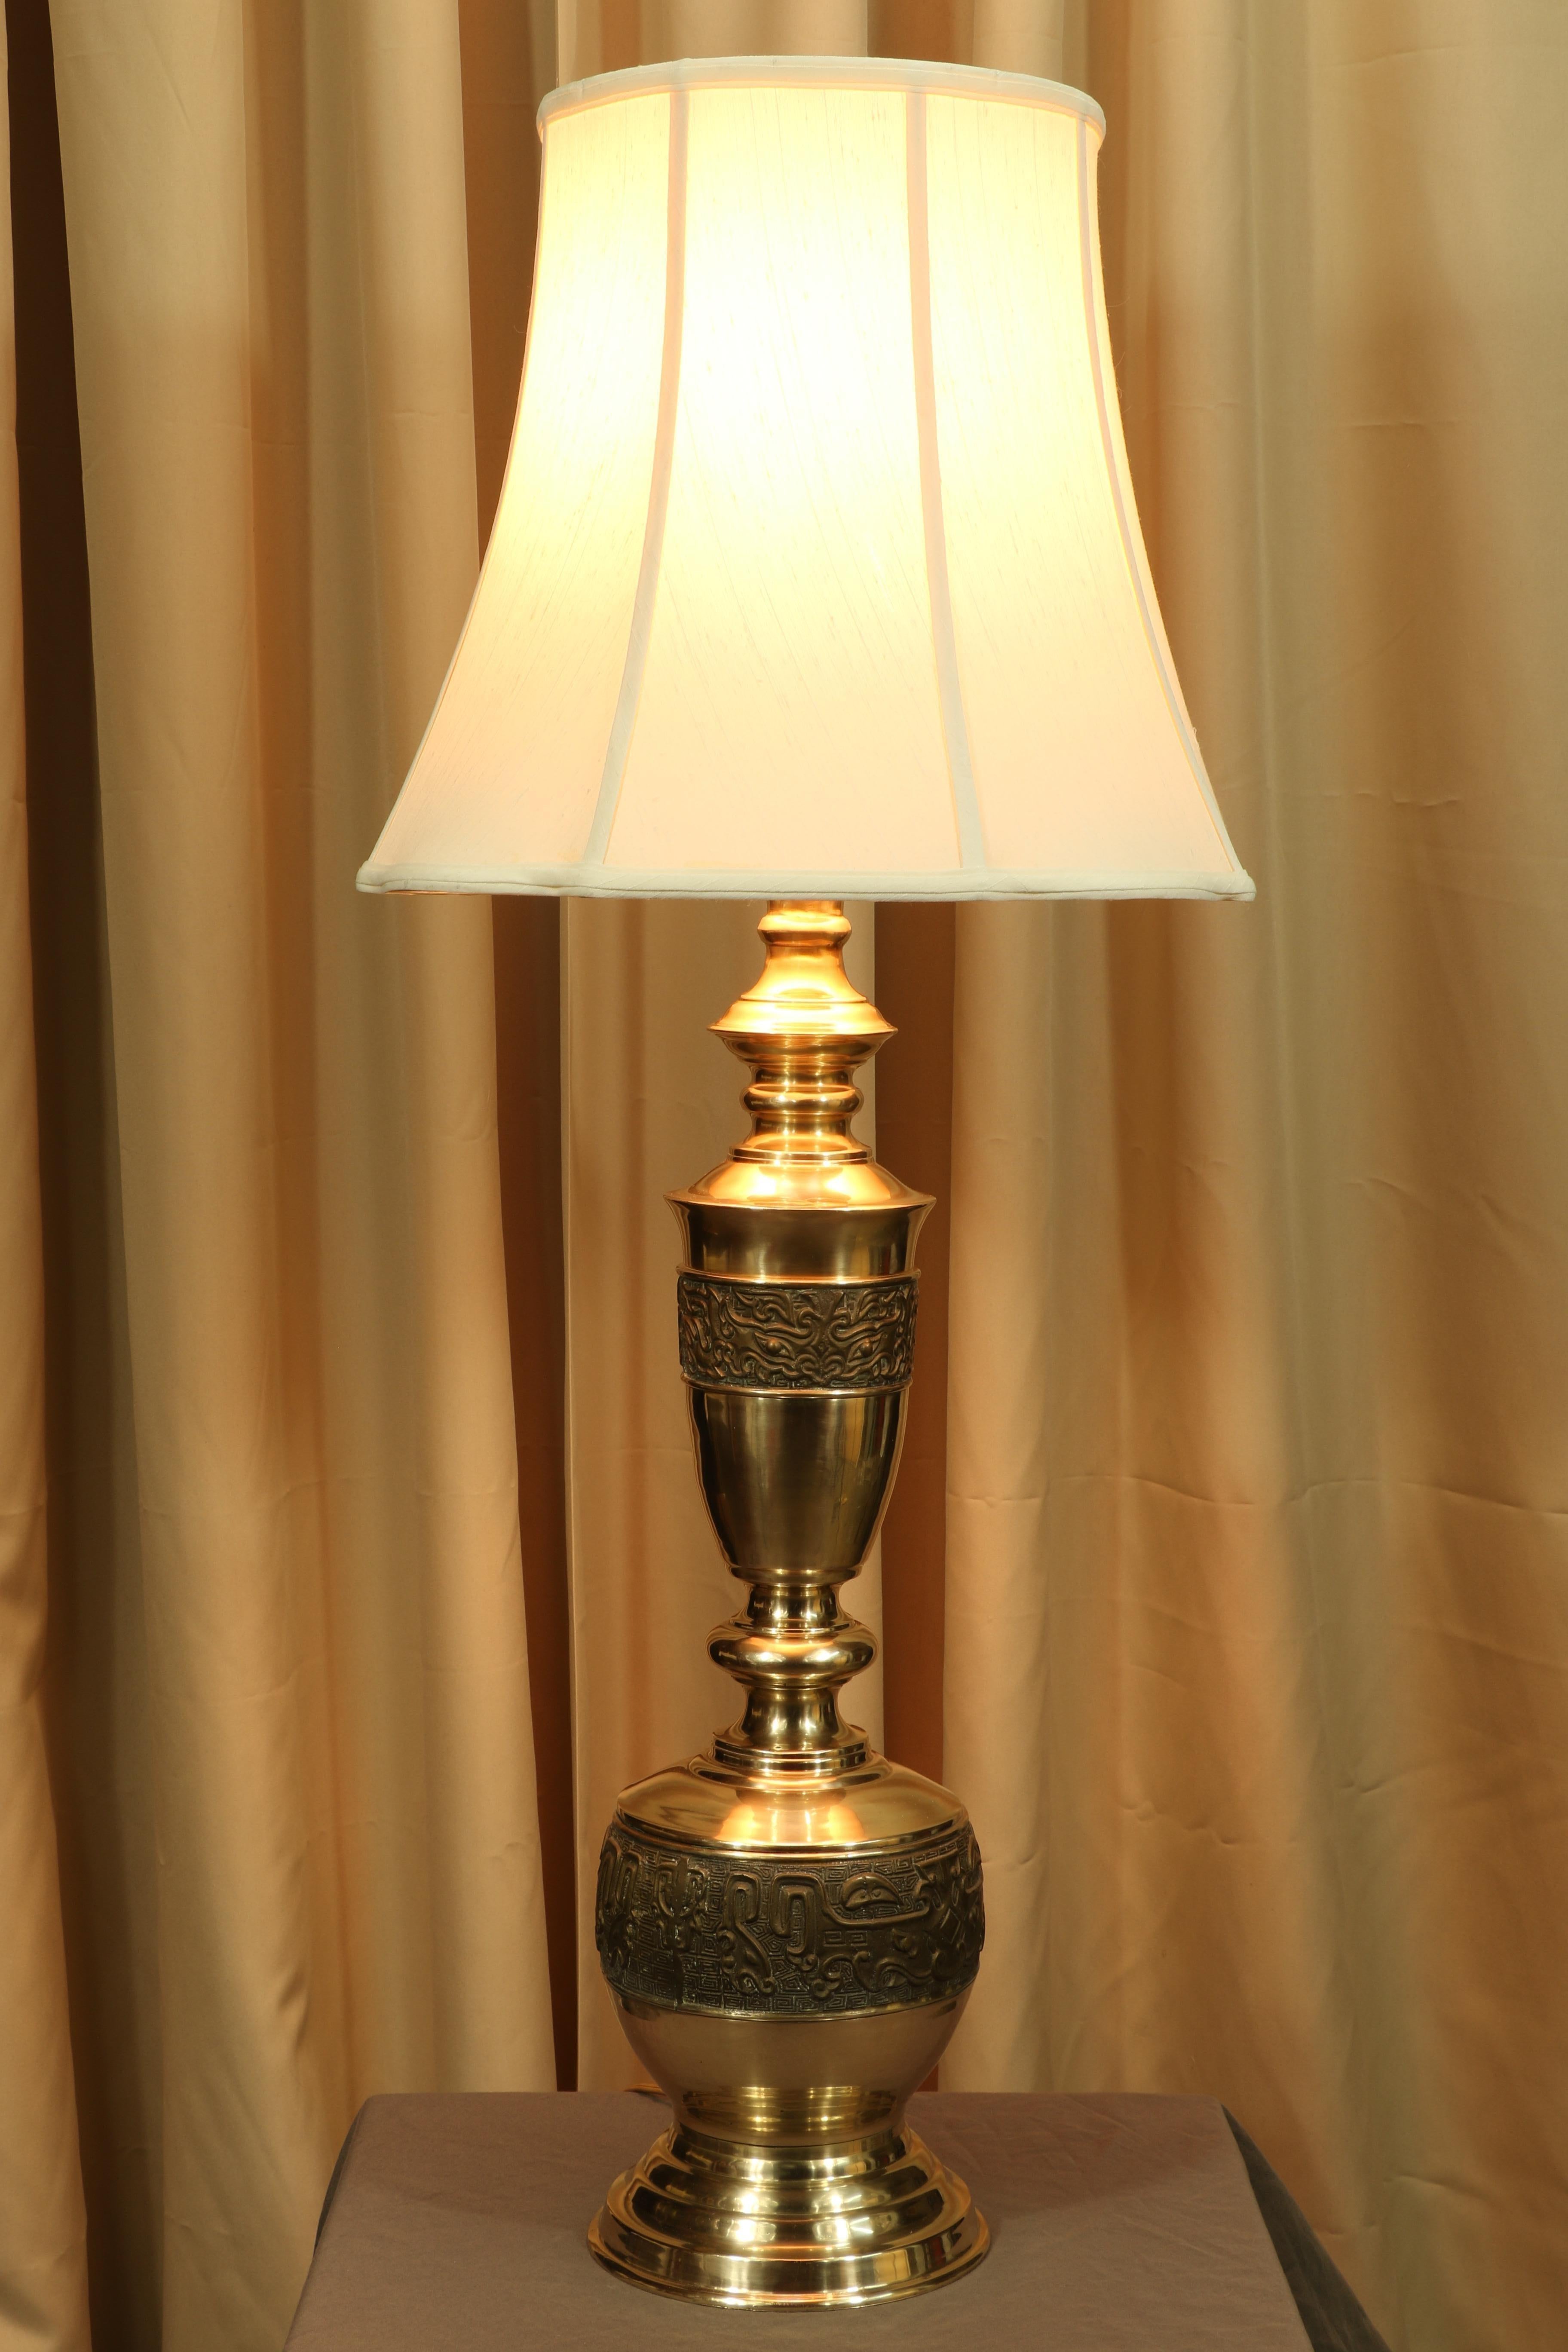 La magnifique patine du laiton fait de cette lampe mid-century de James Mont un objet remarquable. Si une lampe peut être excitante, c'est bien celle-là. Il est entouré de gravures et de symboles de motifs asiatiques à l'extérieur. C'est un bel